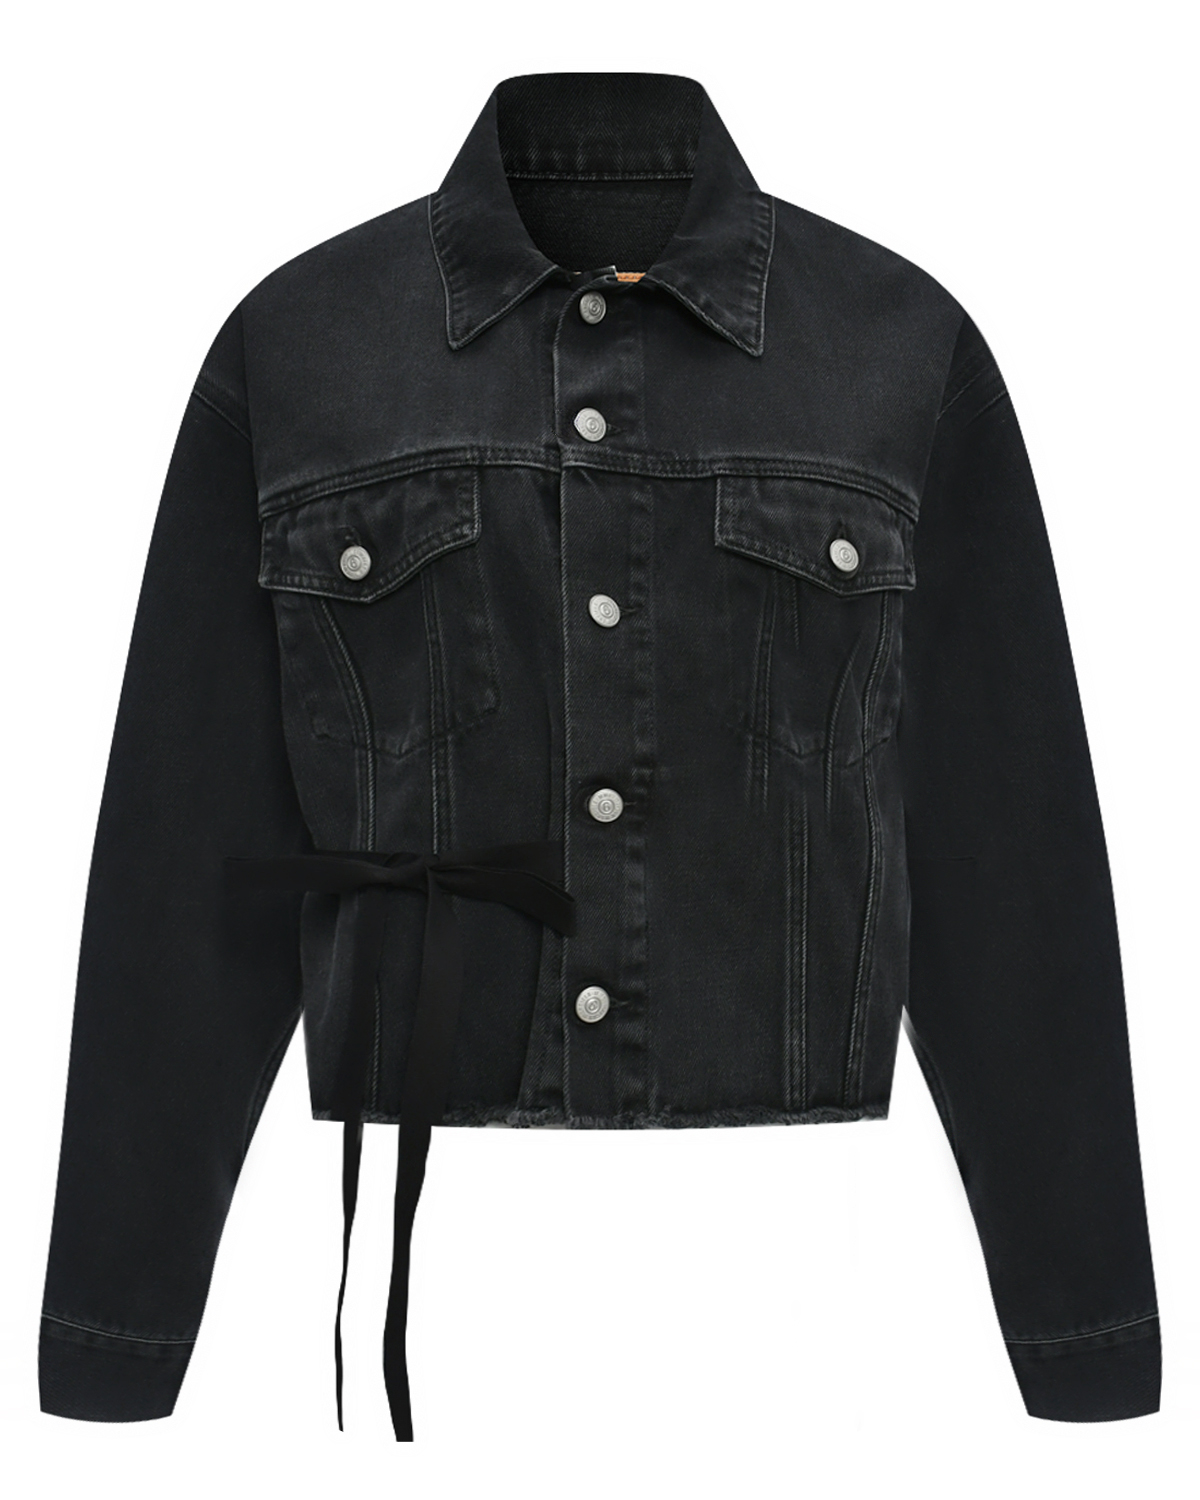 Джинсовая куртка, черная MM6 Maison Margiela, размер 42, цвет черный